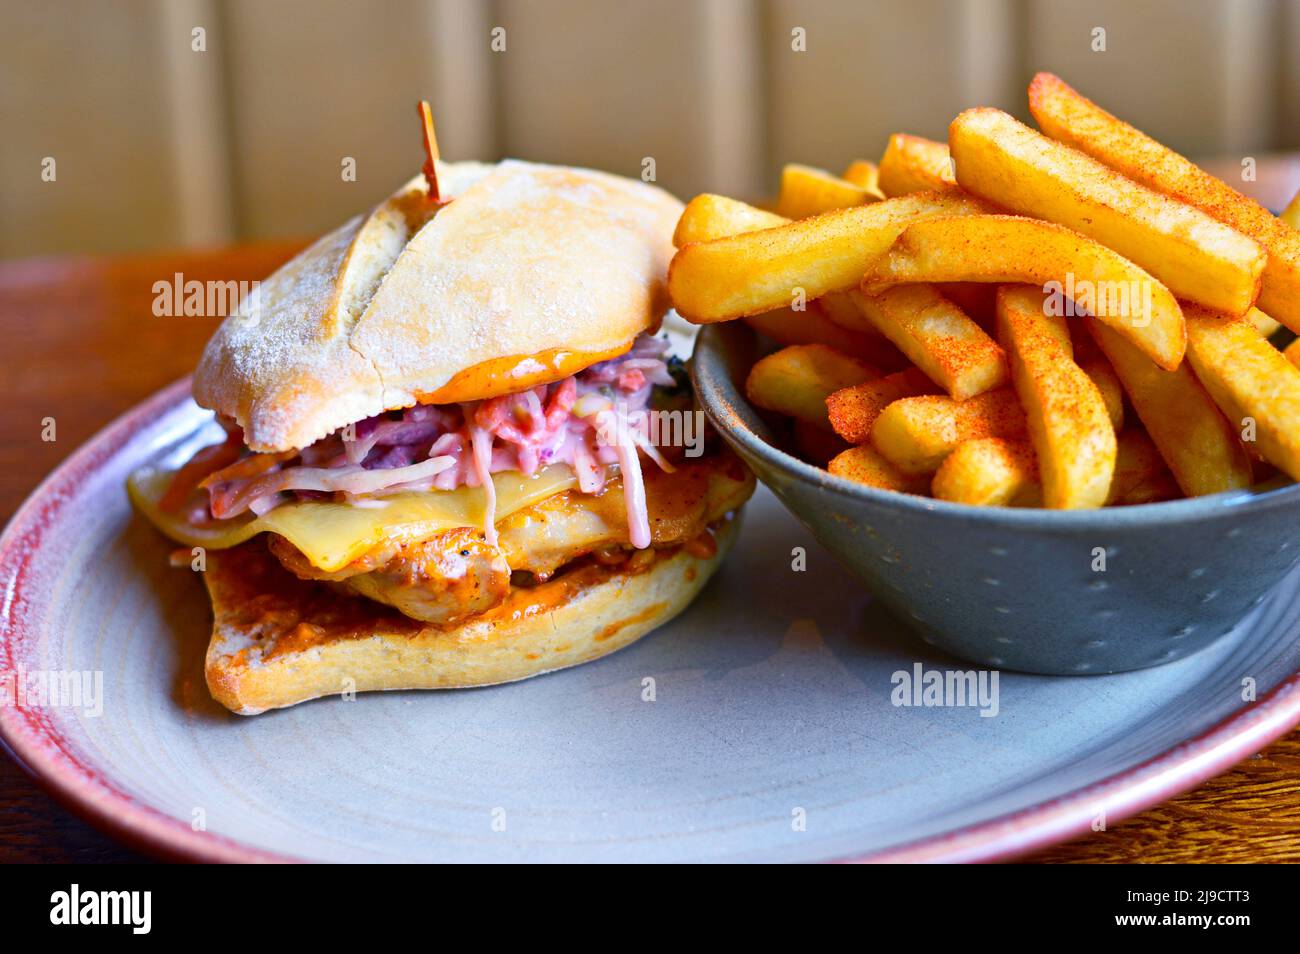 Hamburger con formaggio, carne alla griglia e patatine fritte (patatine fritte) poste sul tavolo del ristorante Foto Stock